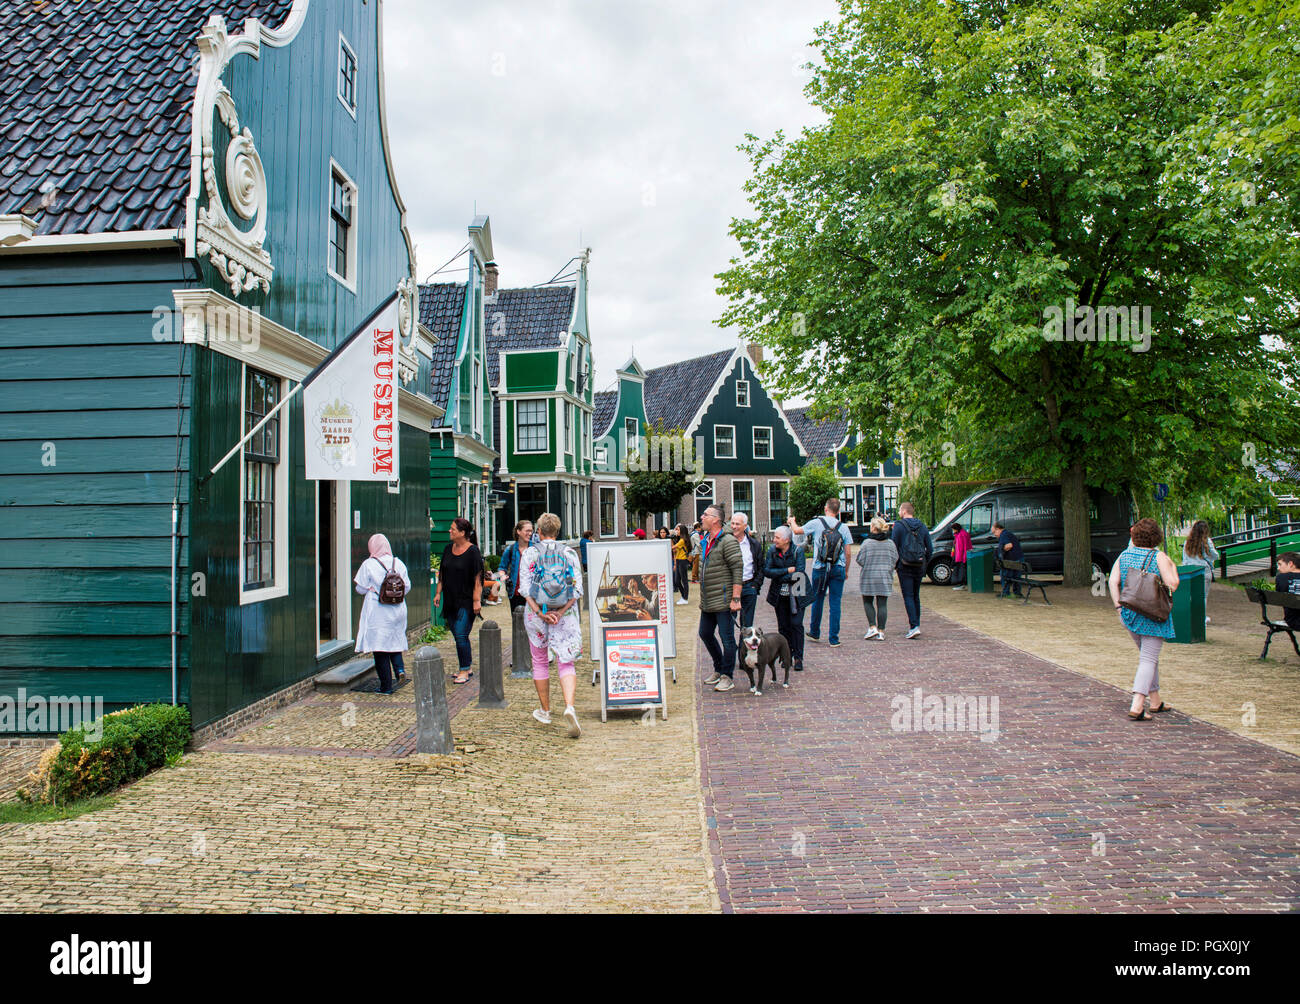 Zaandam,28-Aug-2018,:personas visitan la antigua aldea de Zaandam, Zaanse Schans, este es un pueblo con casas antiguas originales ya que en Holanda, donde alrededor de 1600. Sin entrada , más un museo al aire libre Foto de stock